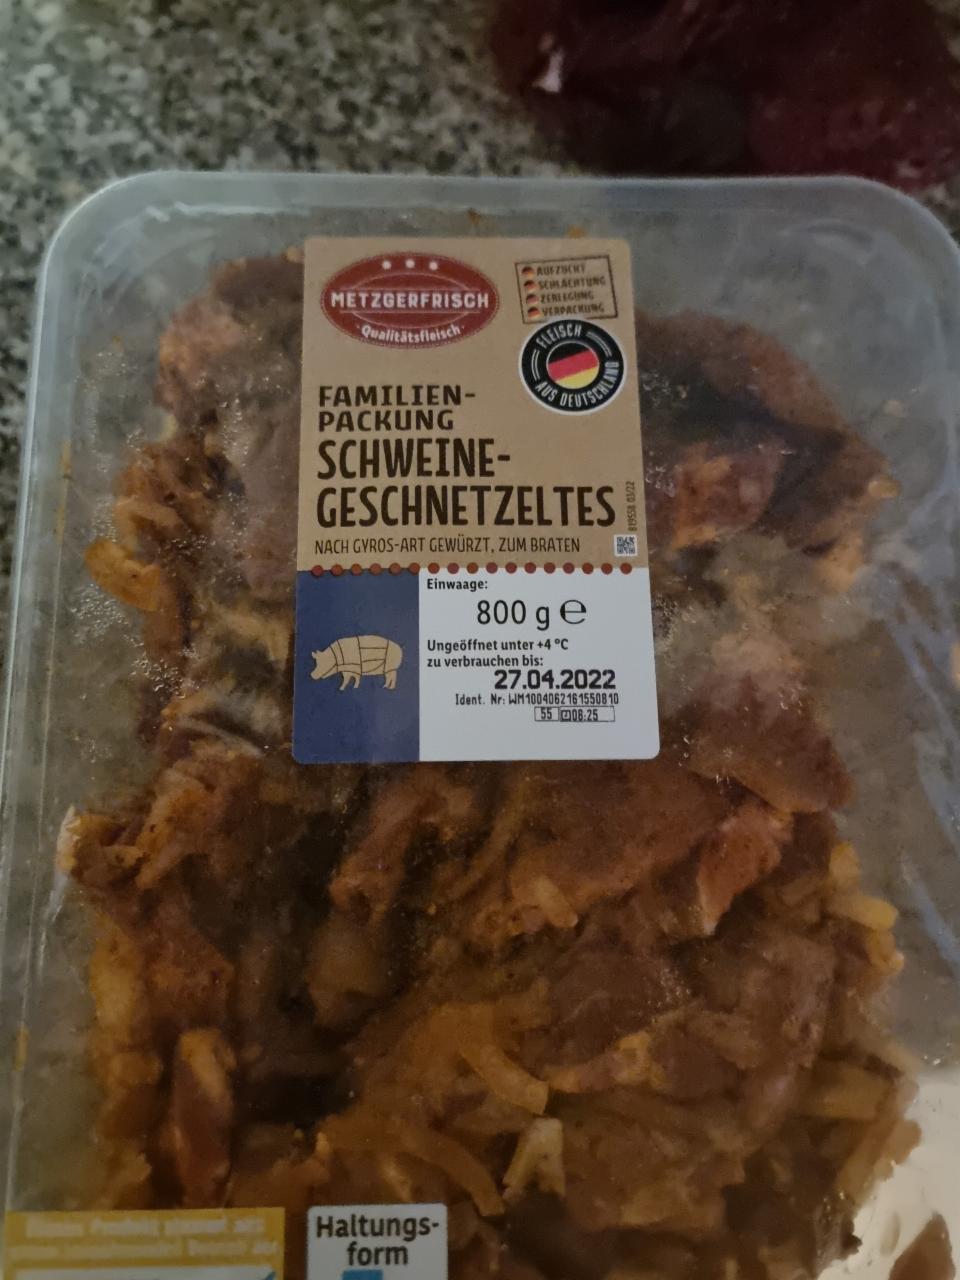 - nutričné hodnoty kJ a familien-packung schweine-geschnetzeltes kalórie,